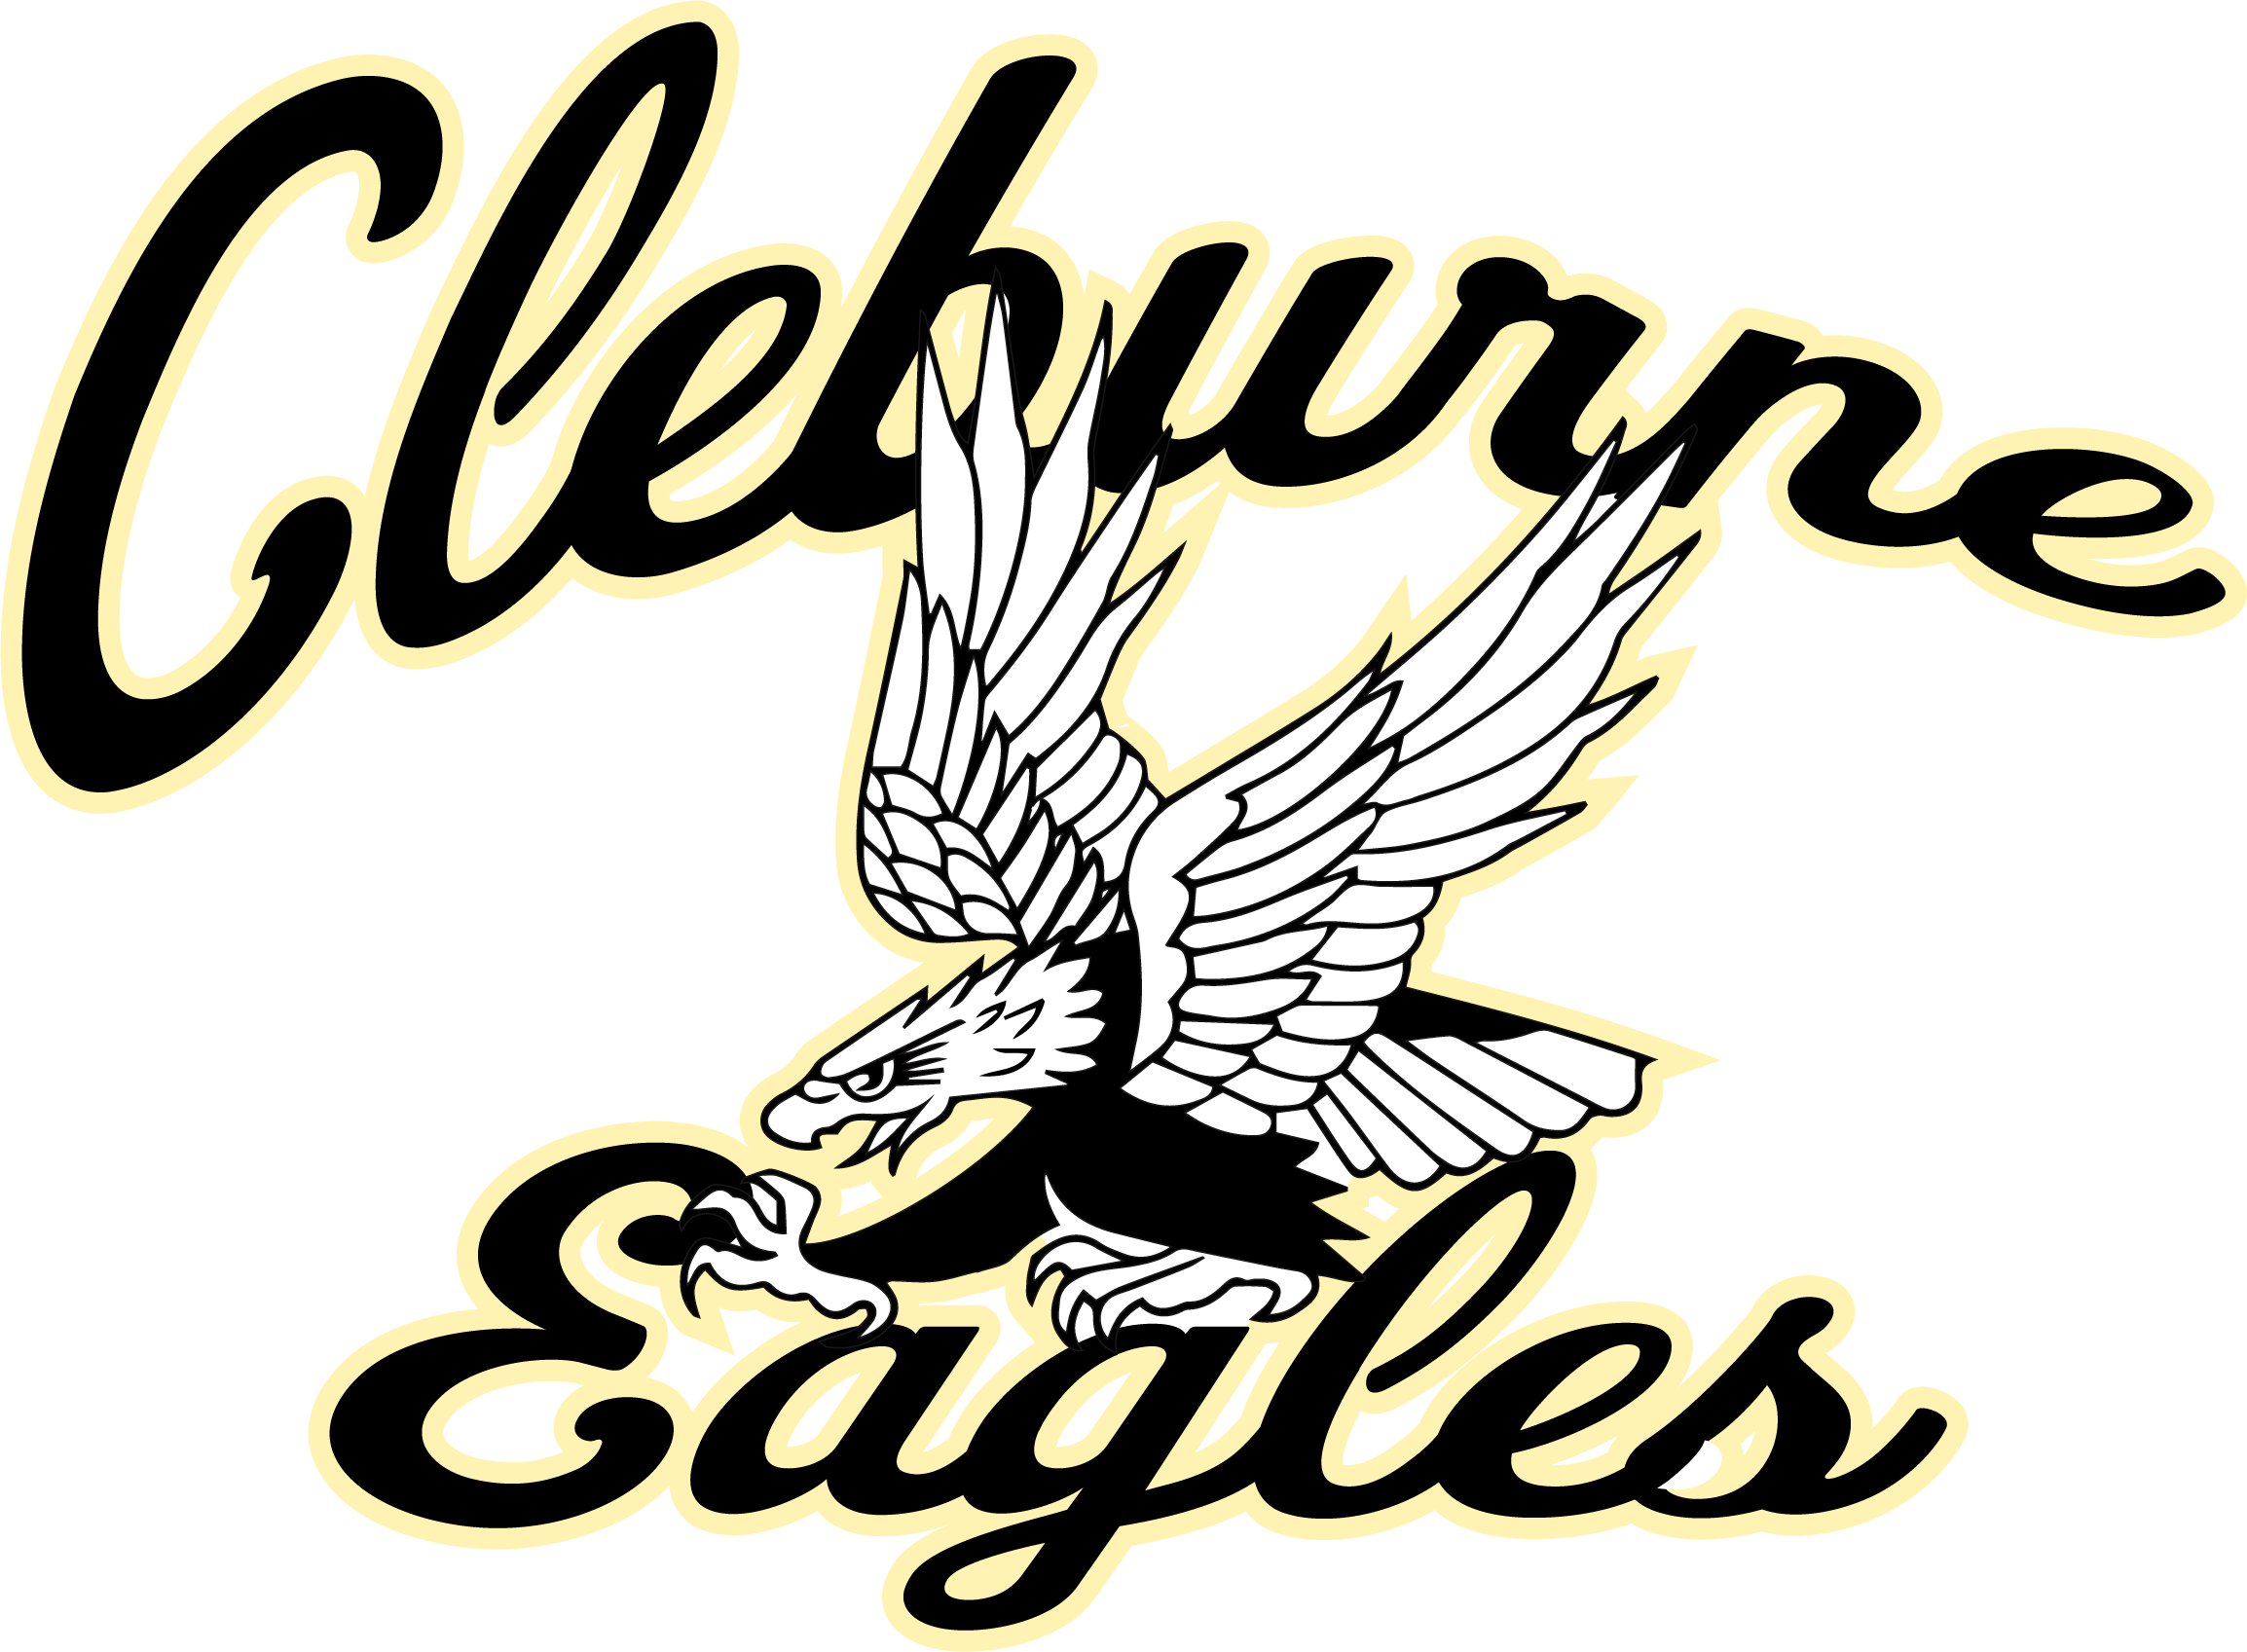 Cleburne Eagles.png